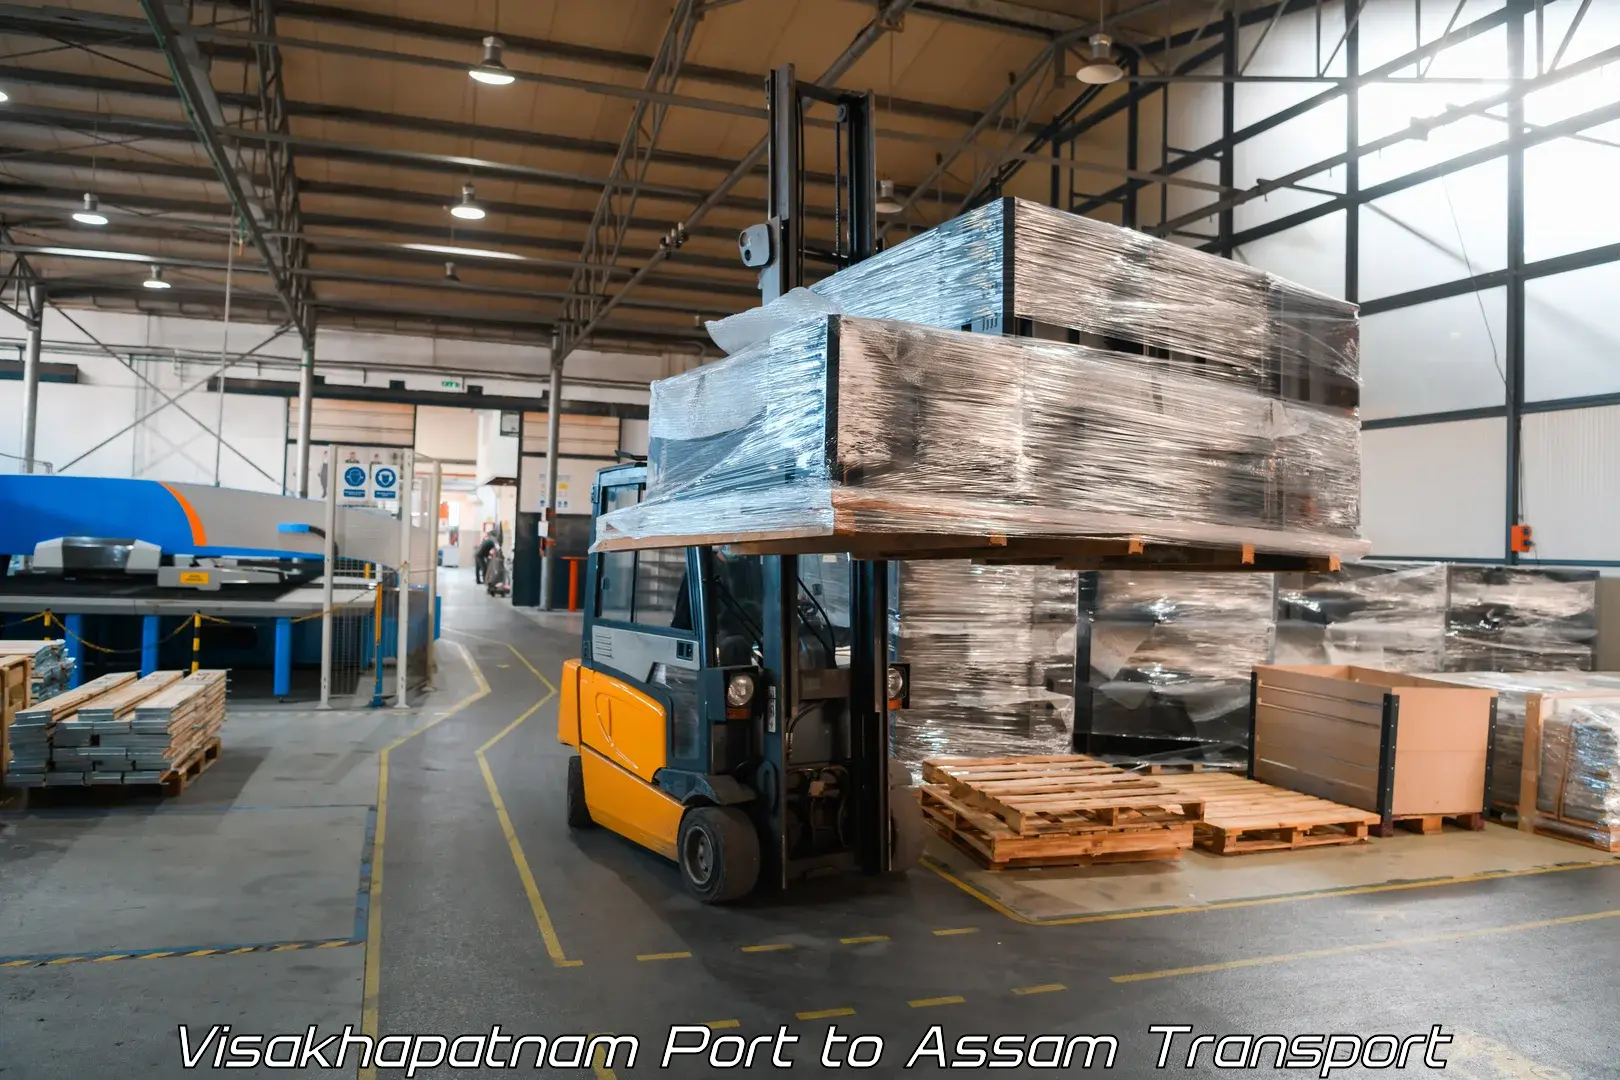 Online transport service in Visakhapatnam Port to Lala Assam